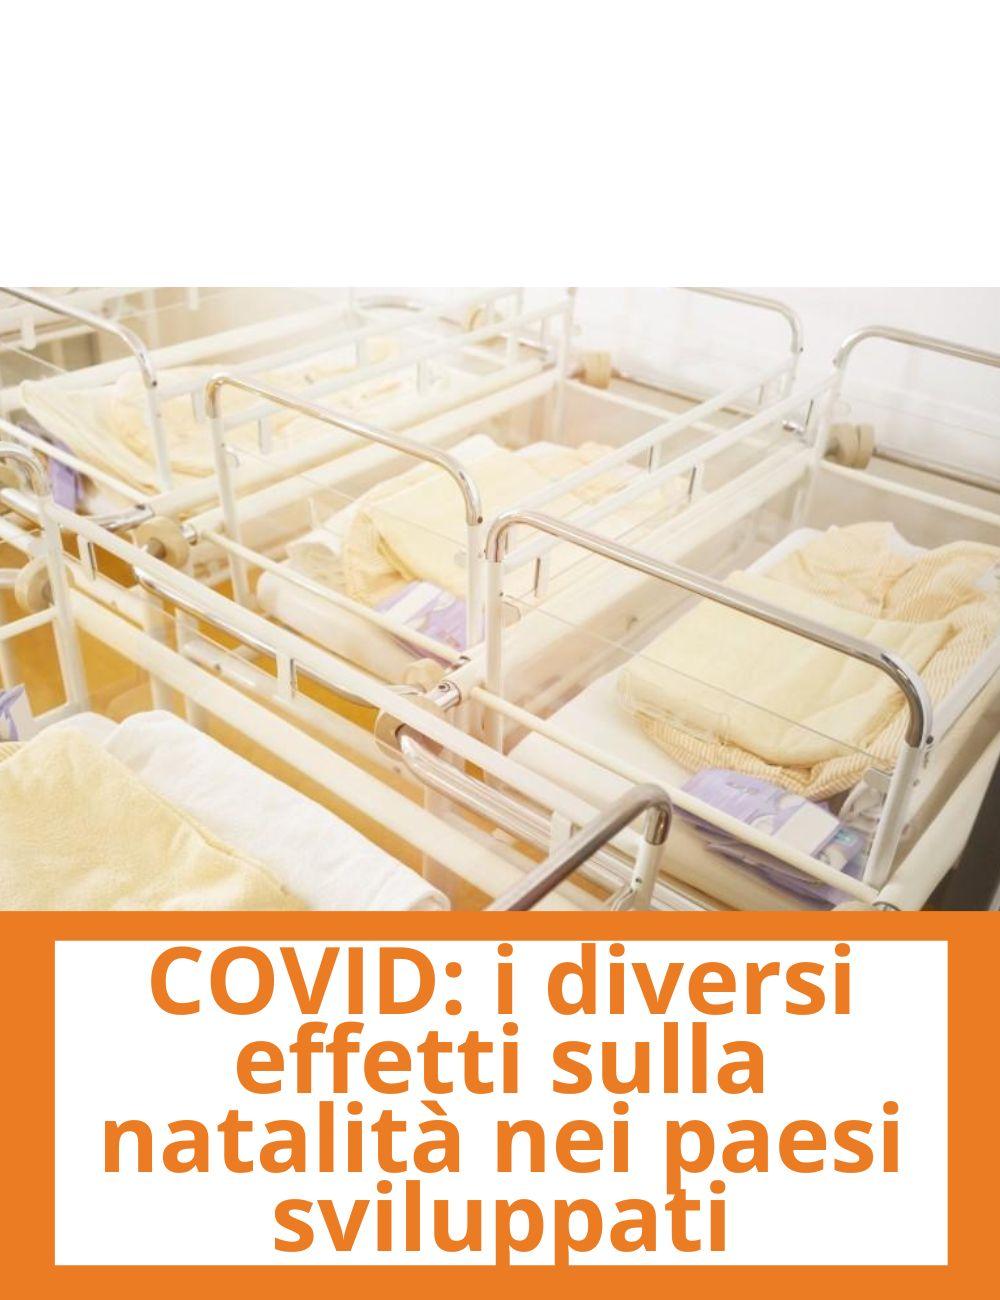 Immagine con link ad articoli su temi simili. L'immagine di culle ospedaliere rimanda all'articolo intitolato: COVID: i diversi effetti sulla natalita' nei paesi sviluppati